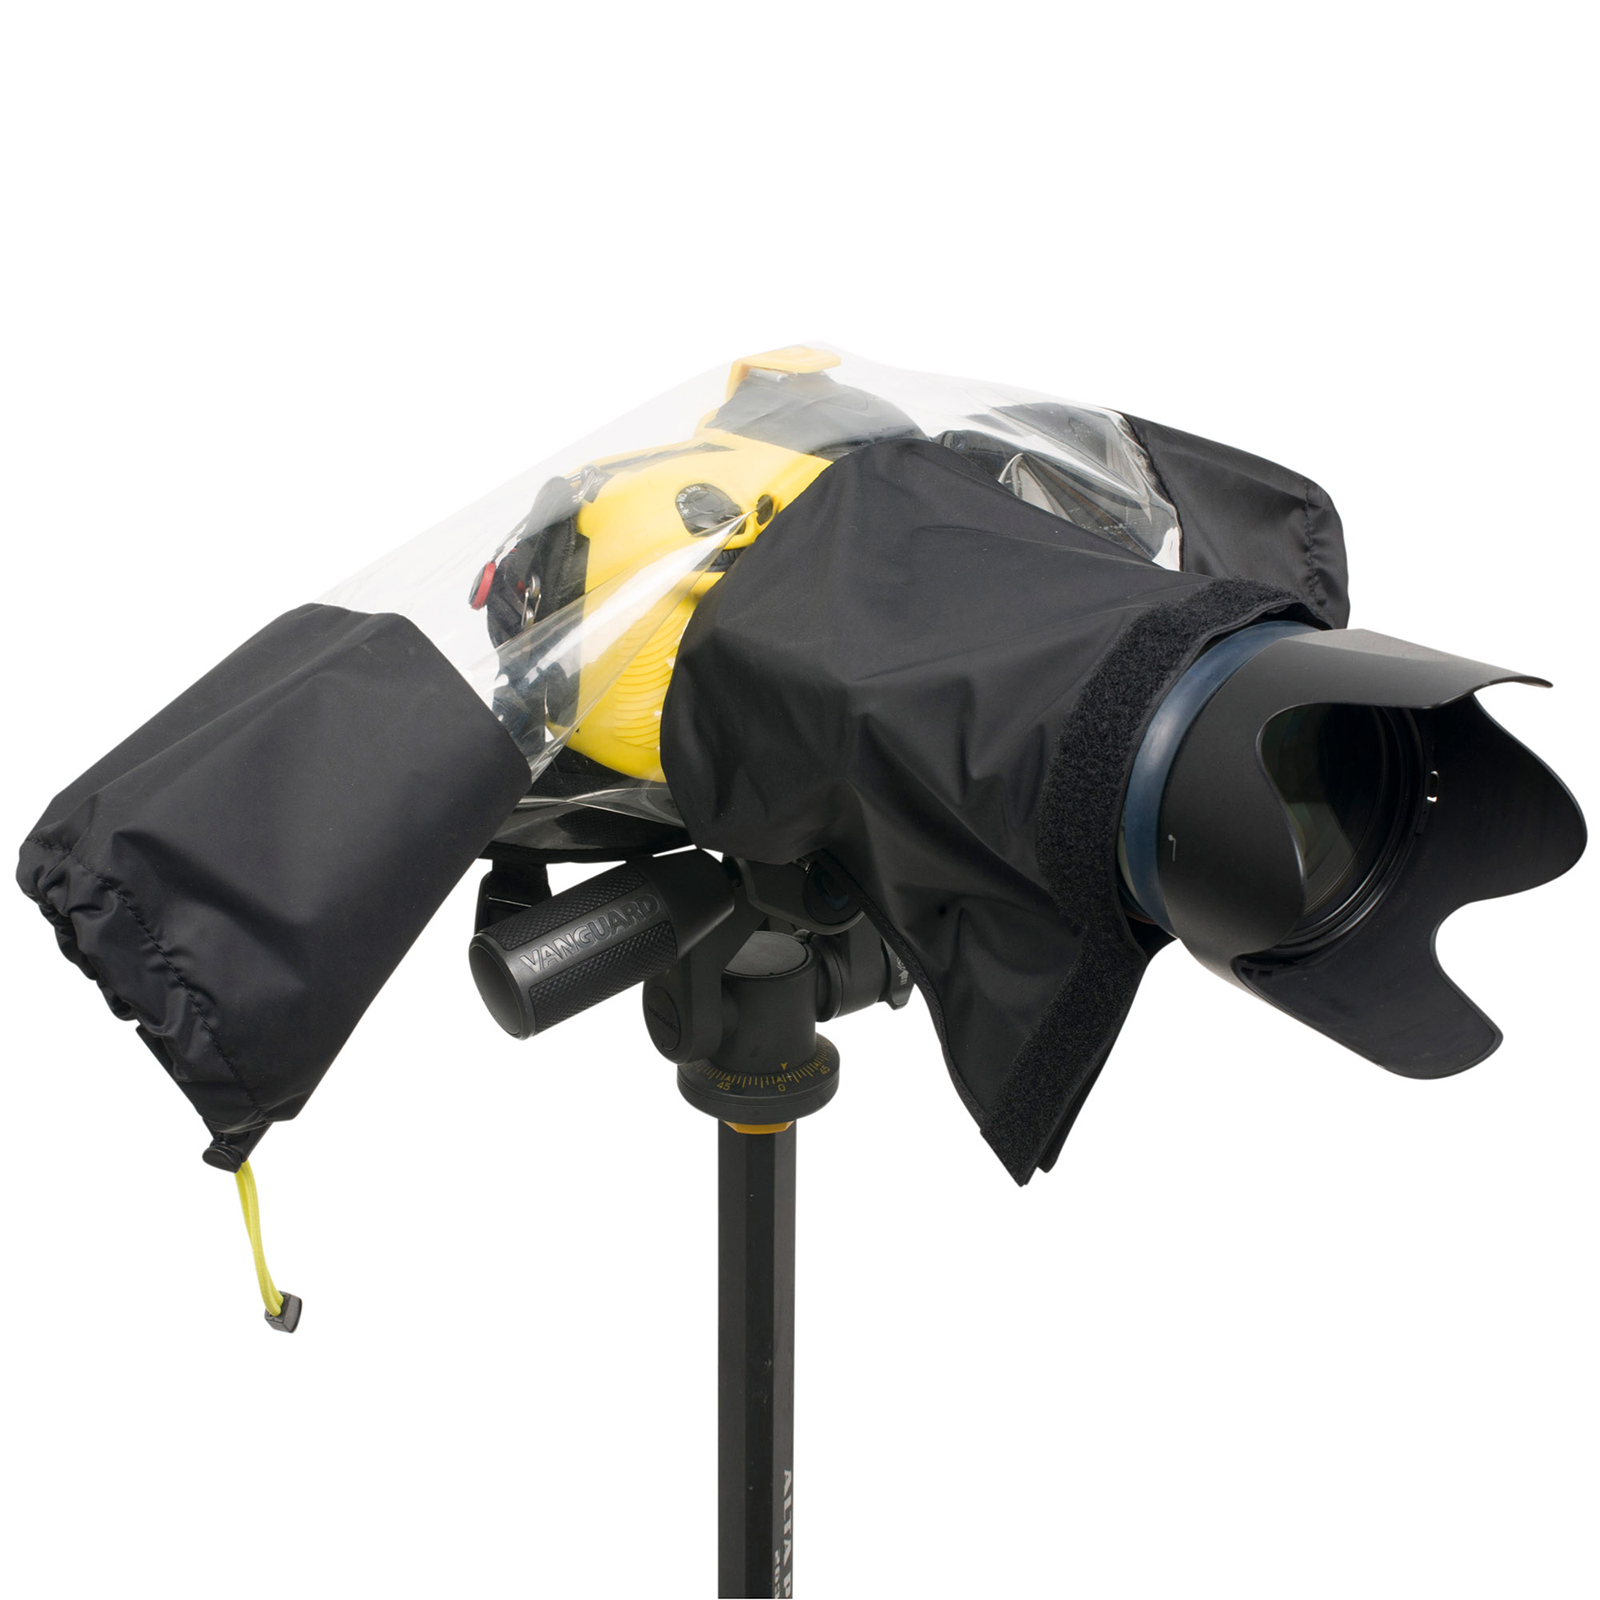 Orca OR-590 Small umbrella for Camera yellow/silver